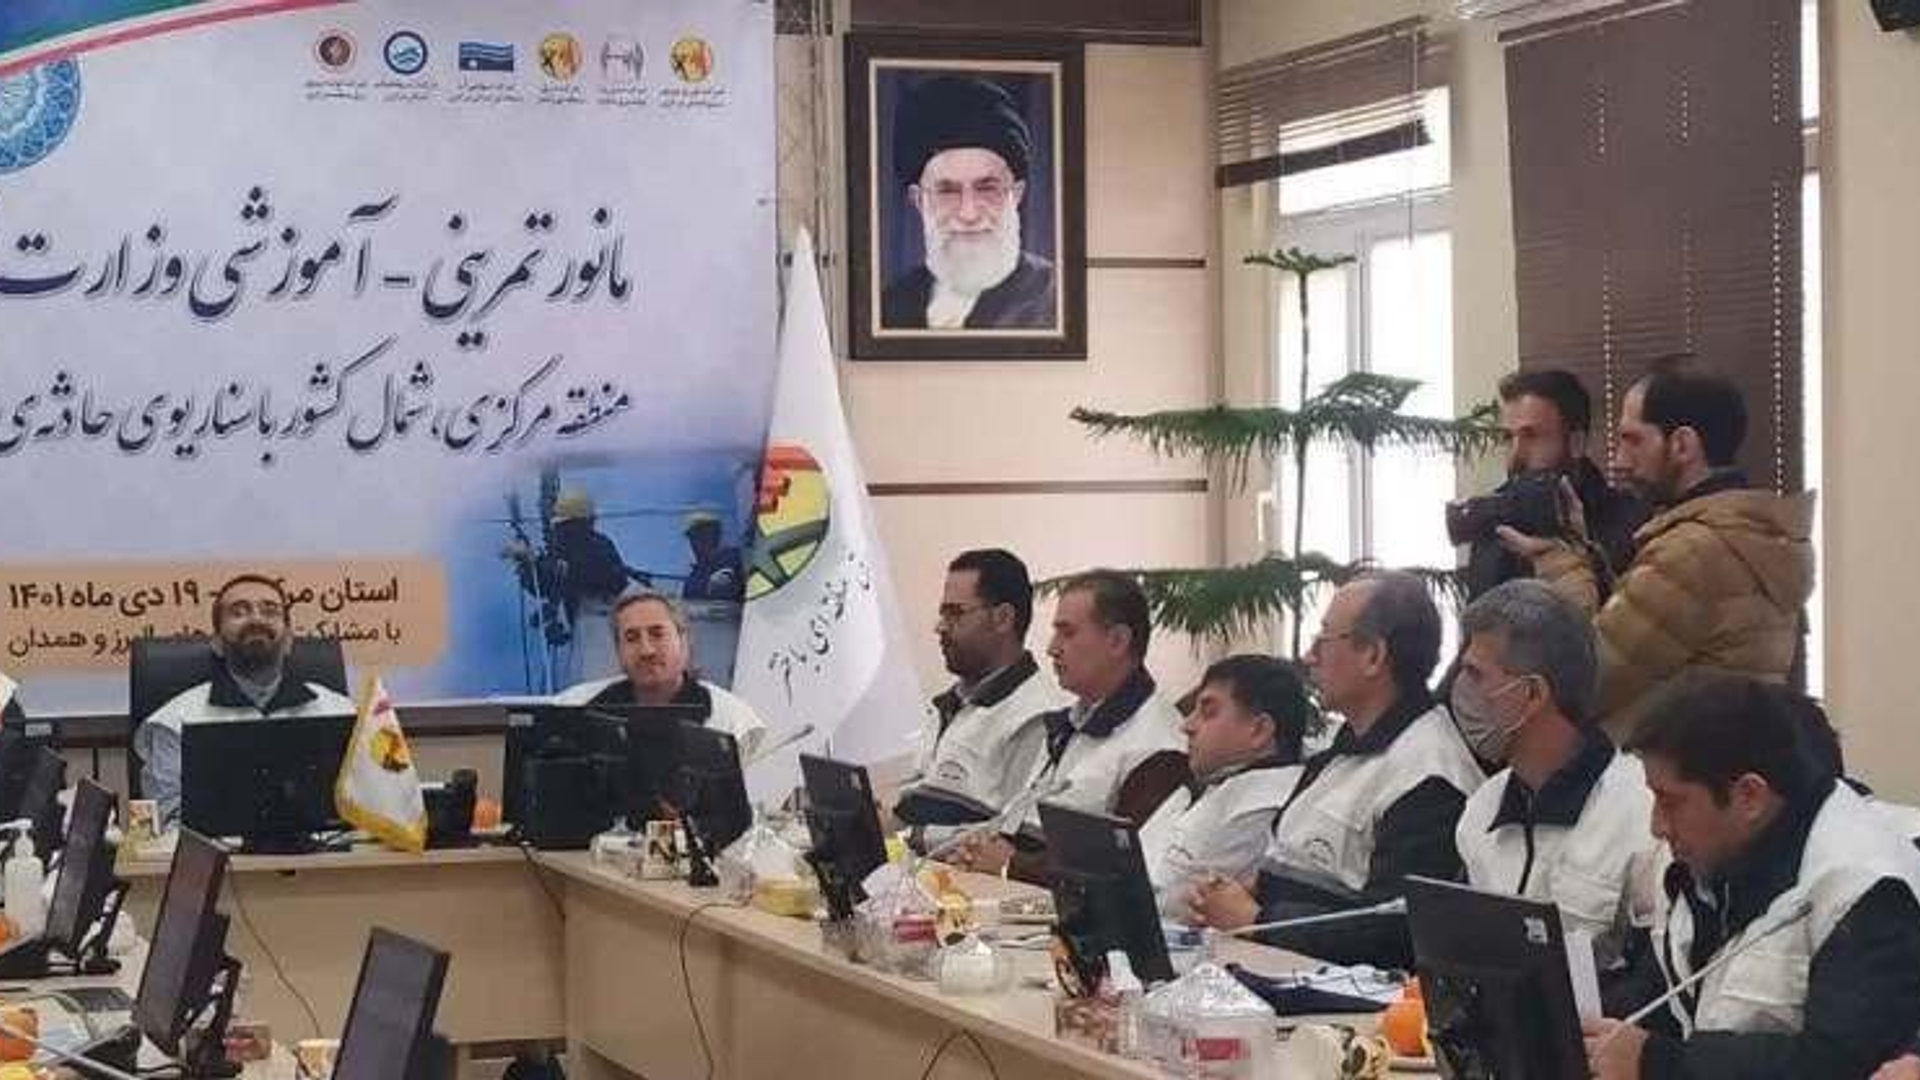 مانور تمرینی آموزشی وزارت نیرو در مناطق چهارگانه استان مرکزی